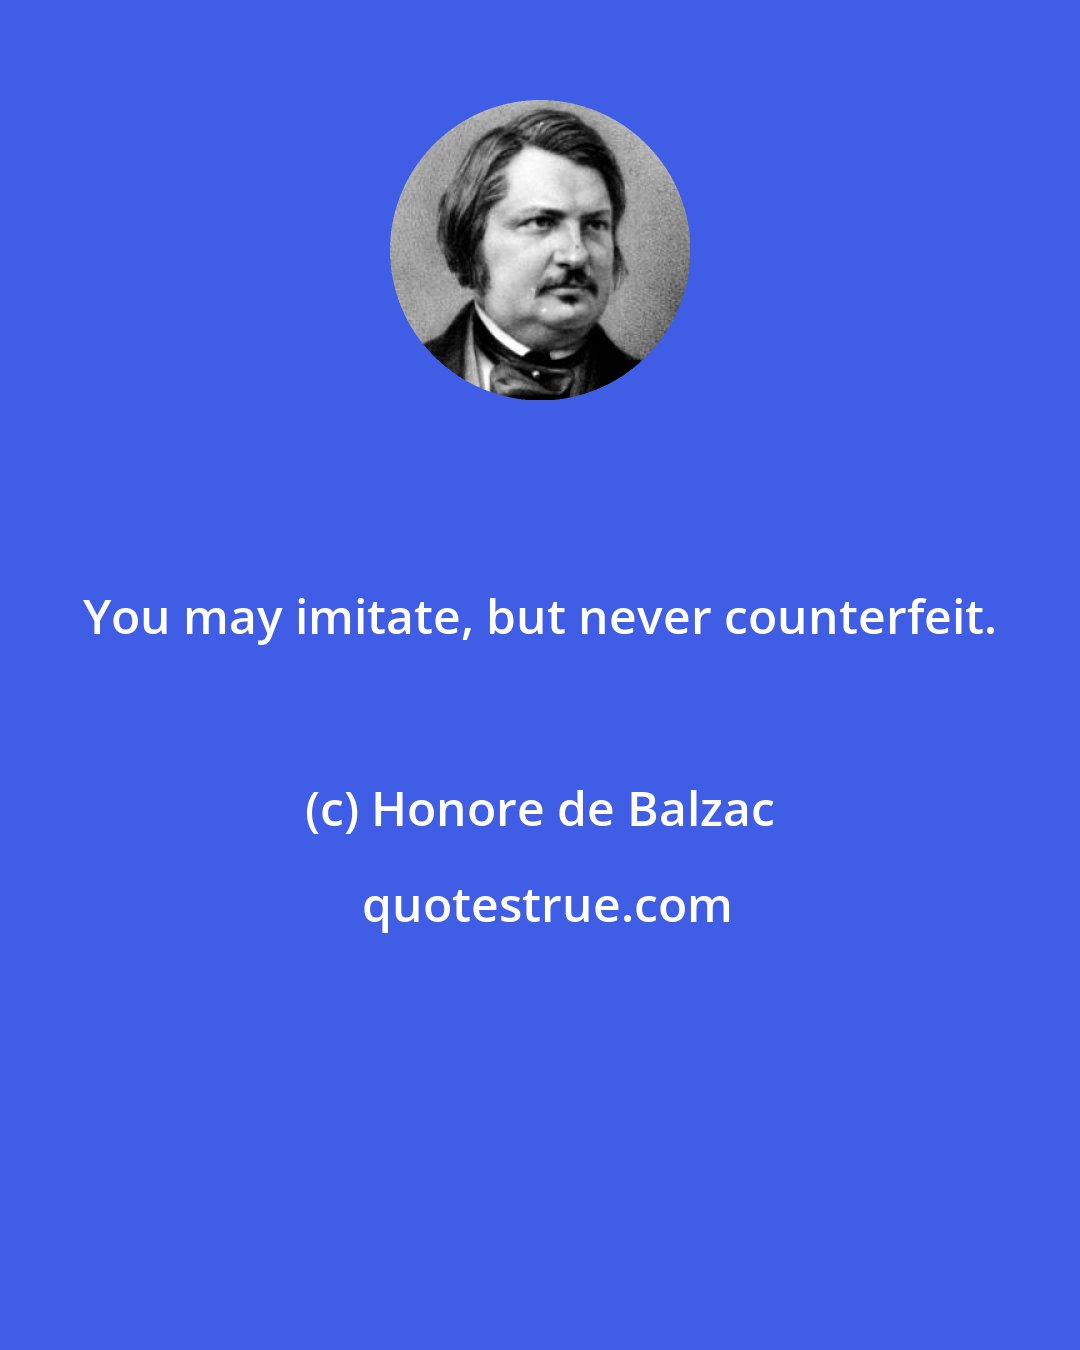 Honore de Balzac: You may imitate, but never counterfeit.